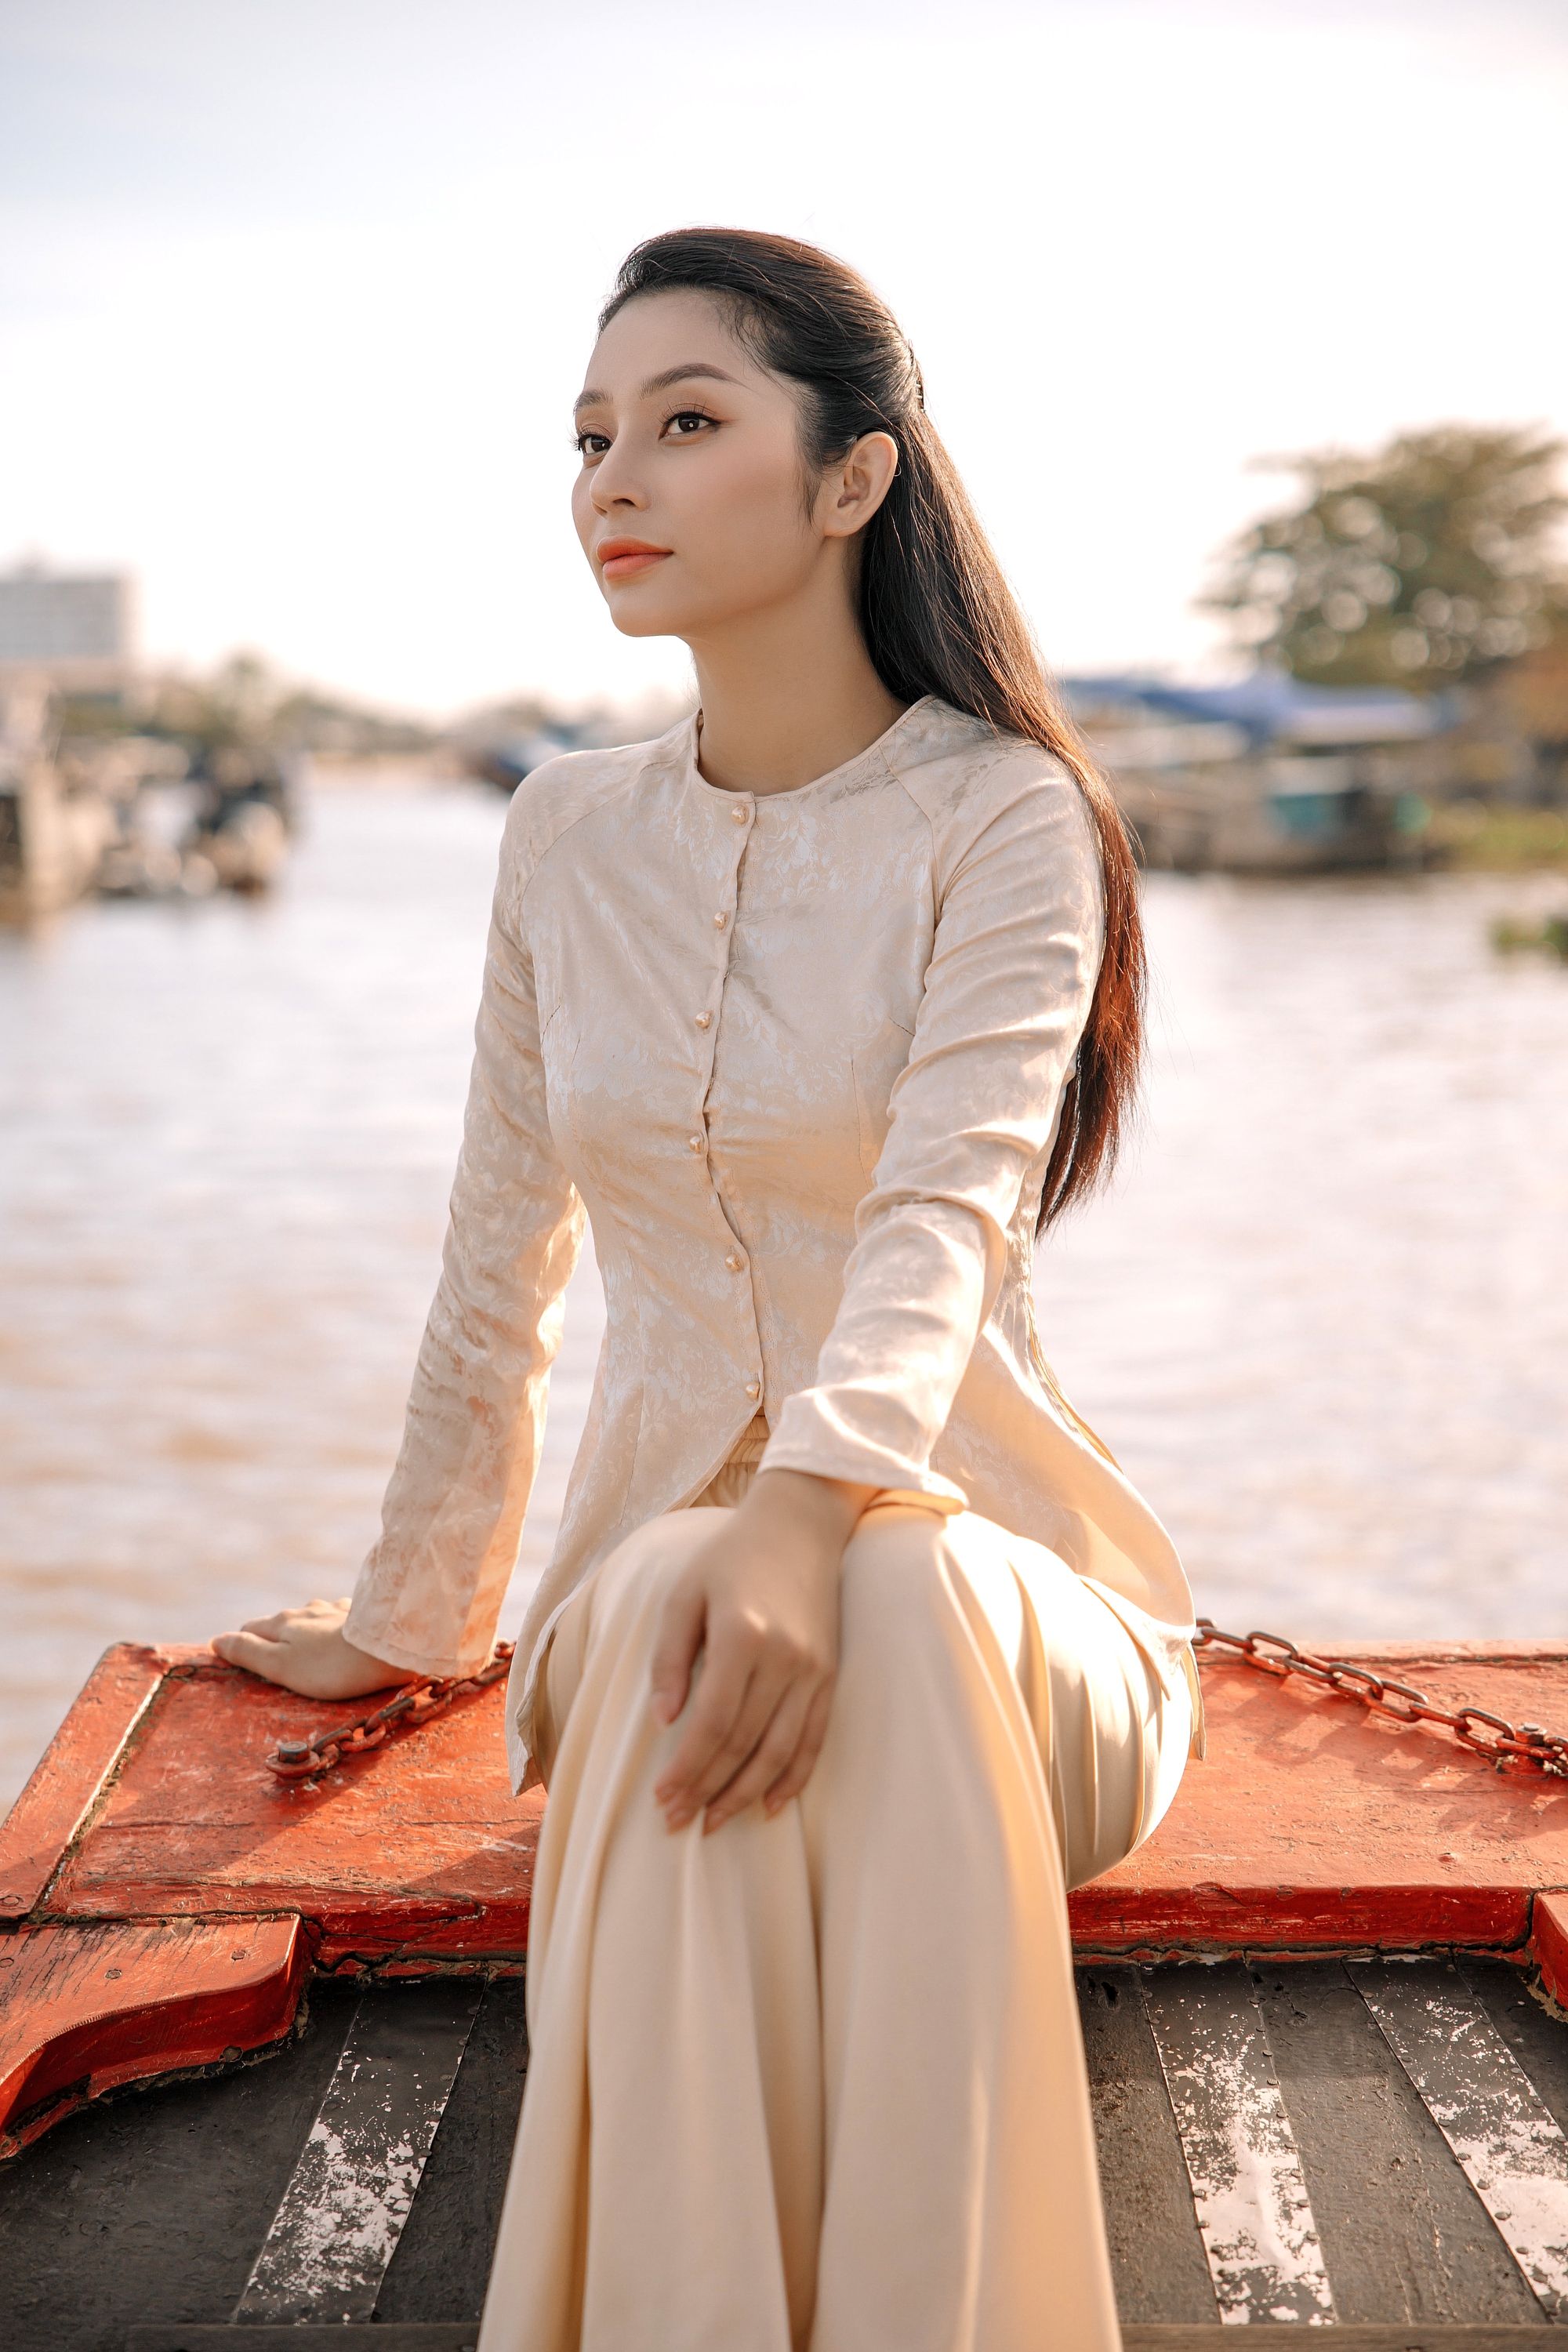 Quá áp lực với việc tập luyện, Lâm Thu Hồng bị sụt 3kg trước giờ lên đường thi The Miss Globe 2022 - Ảnh 3.